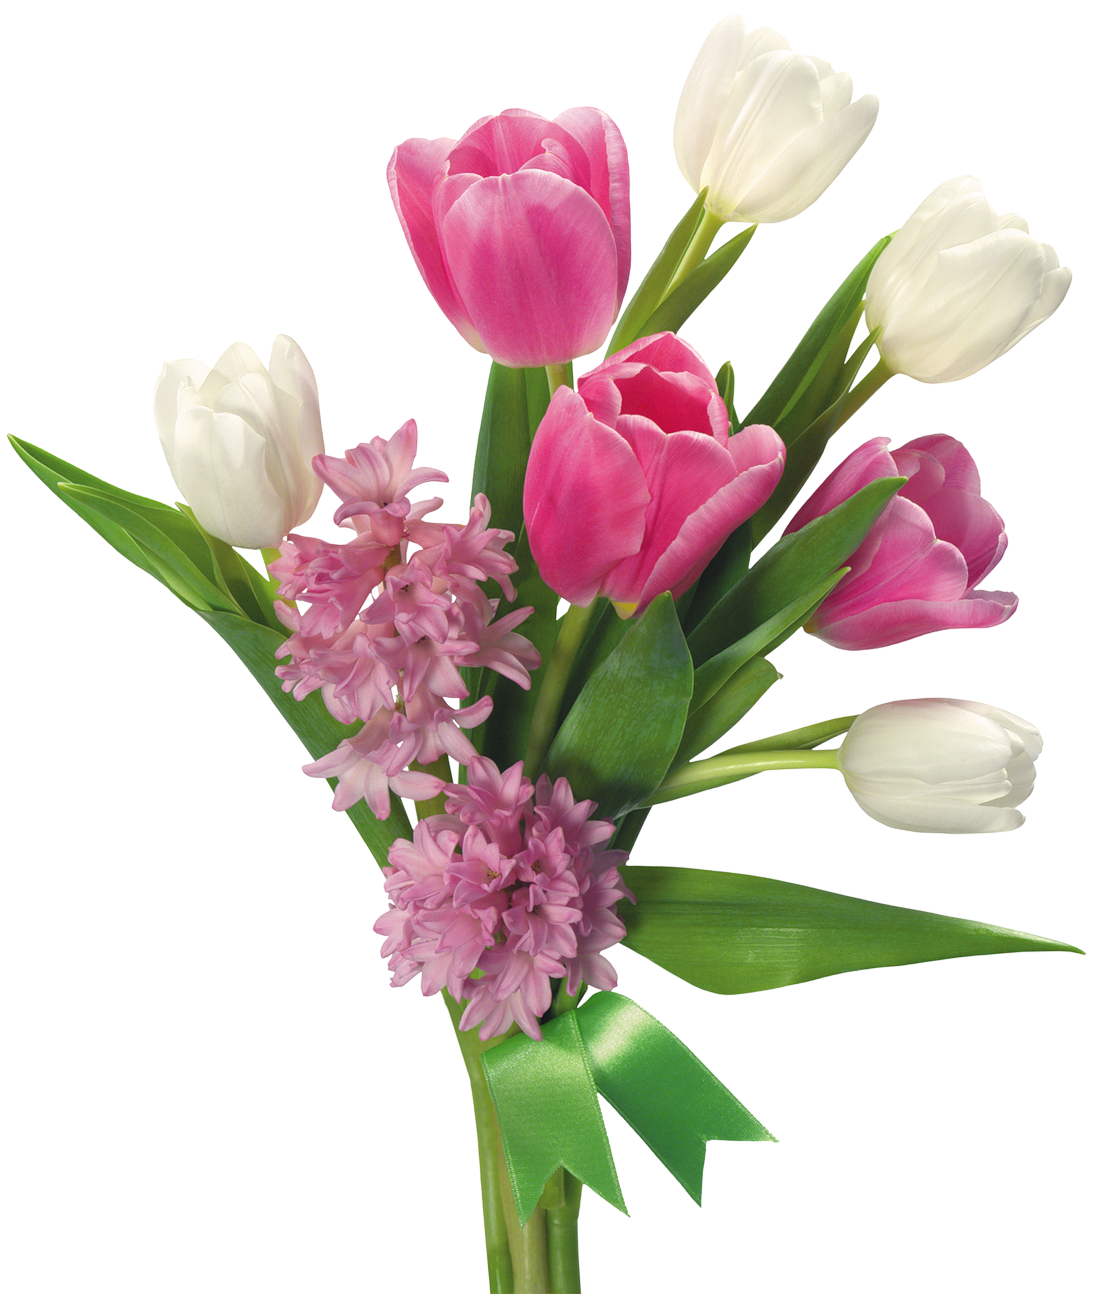 tulip flower bouquet images transparent download 34090